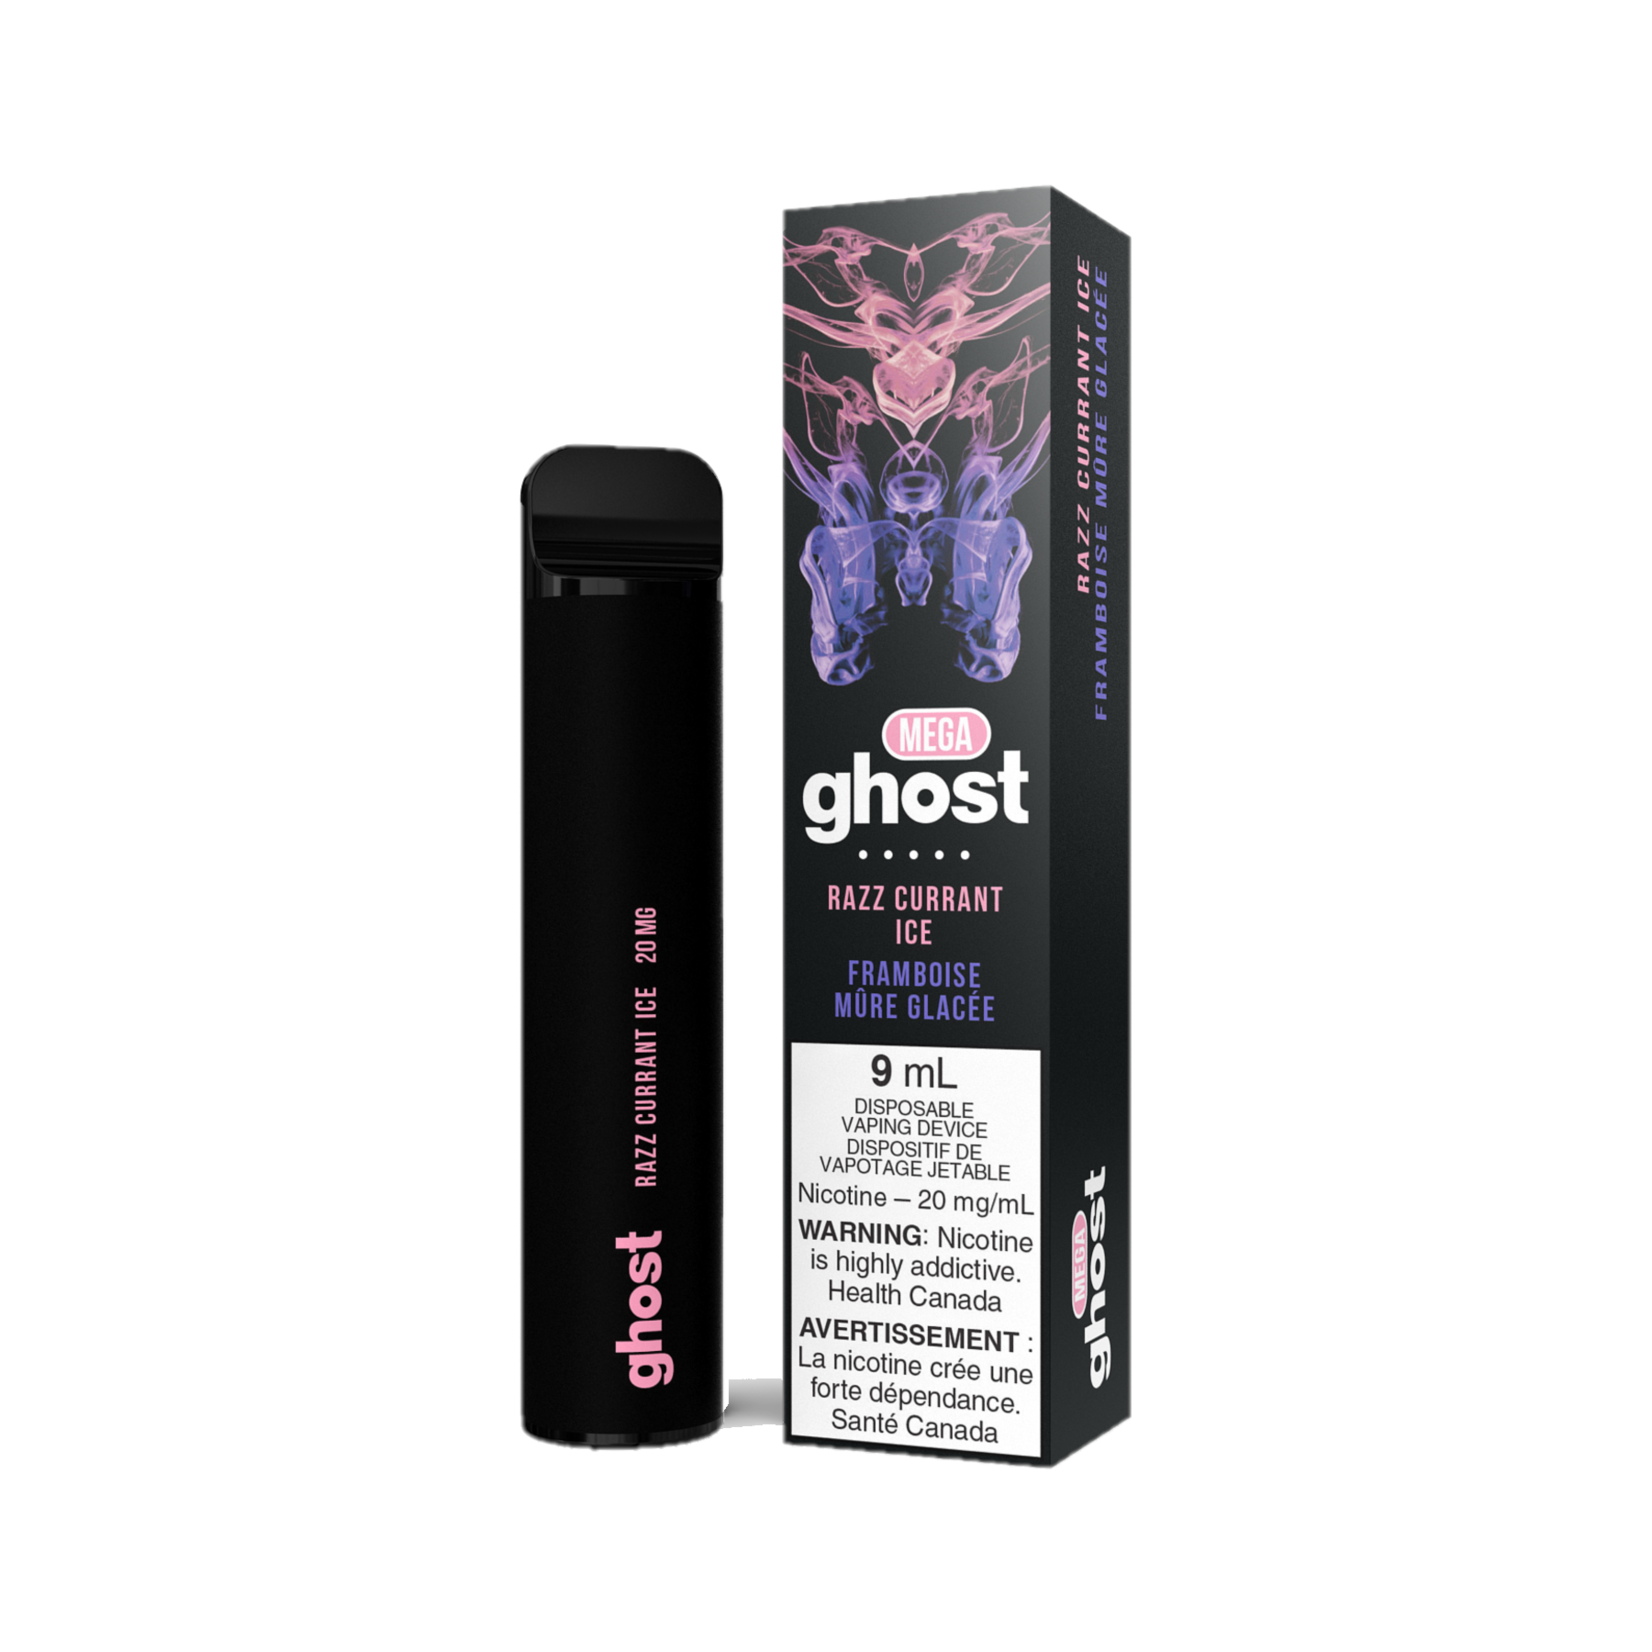 Ghost Ghost Mega